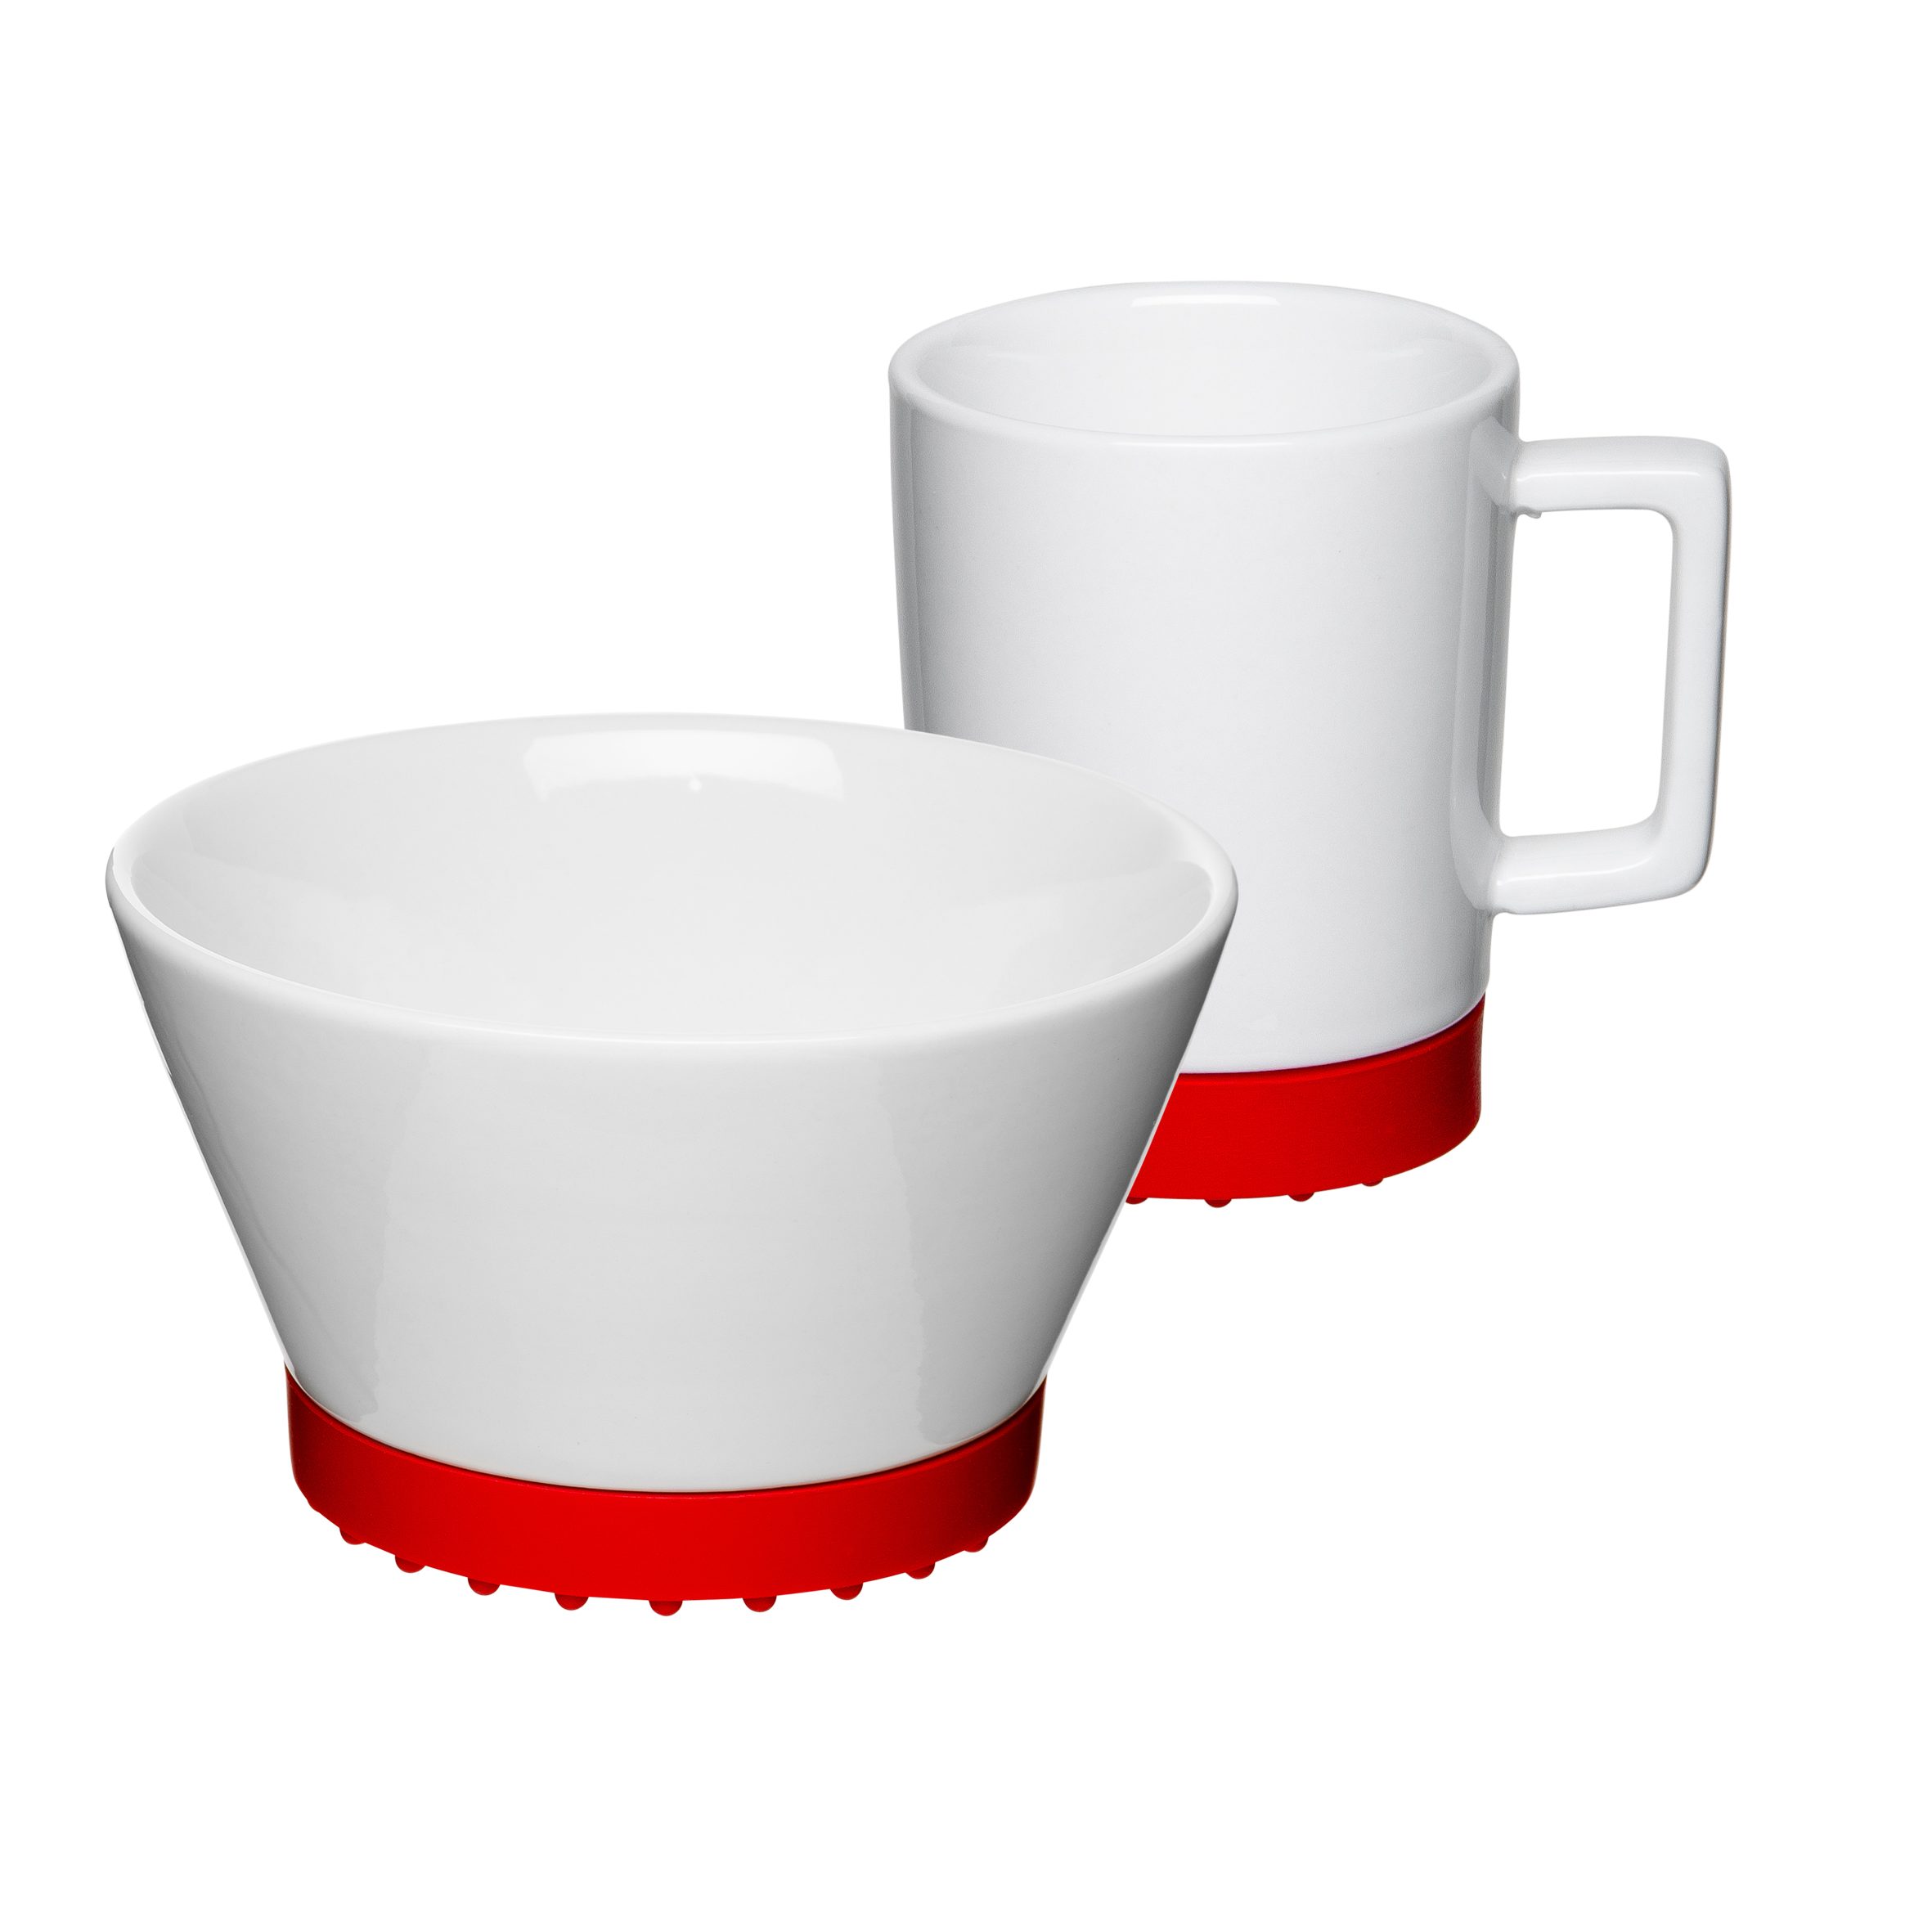 Mahlwerck Manufaktur Frühstücks-Geschirrset SoftPad (2-tlg), Porzellan, Personen, 2-teilig, mikrowellengeeignet, Red spülmaschinengeeignet 1